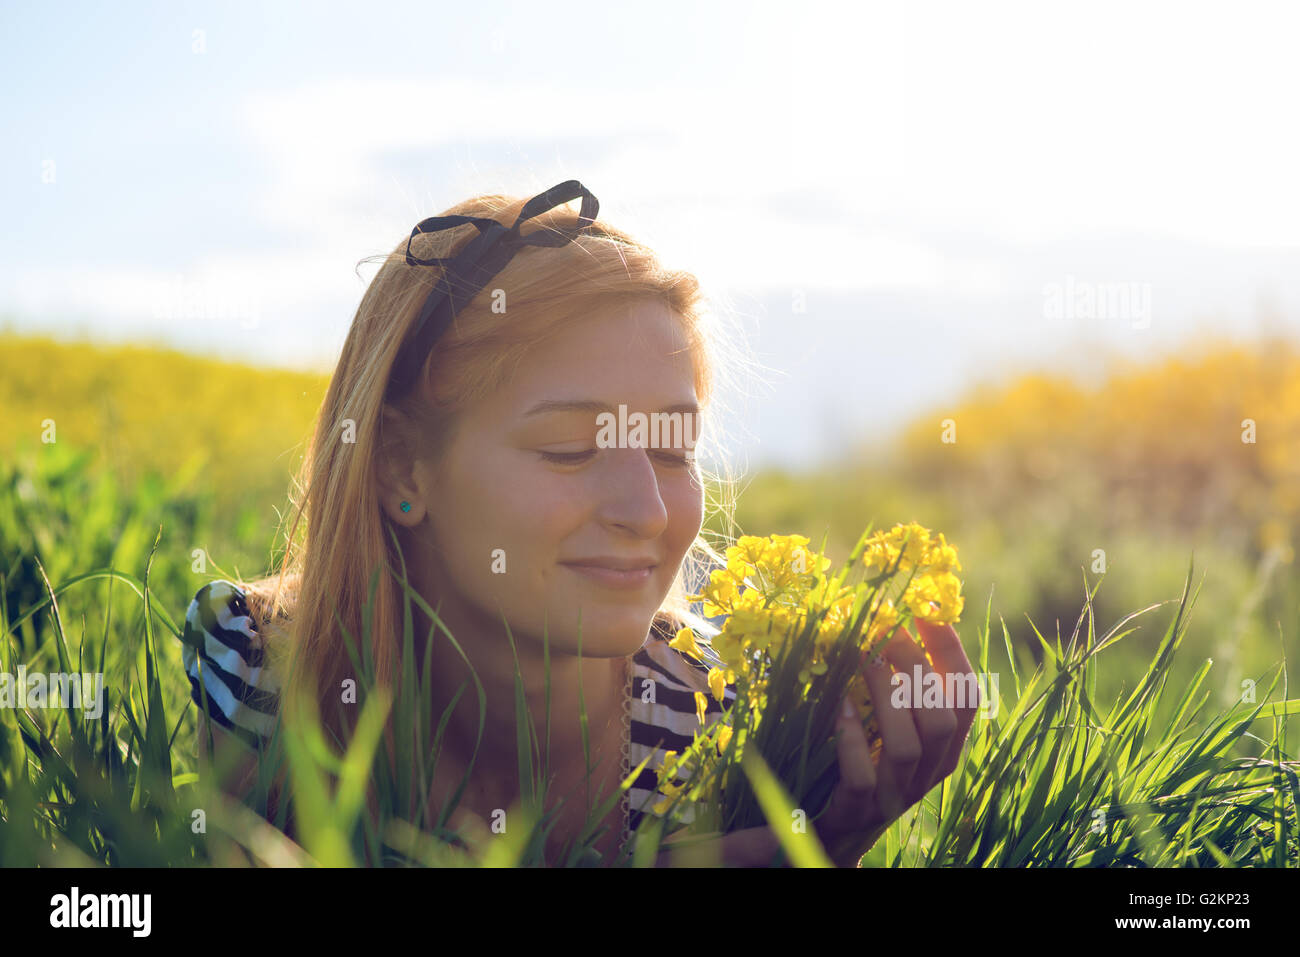 Carino giovane ragazza nel mezzo di un campo di fiori gialli Foto Stock